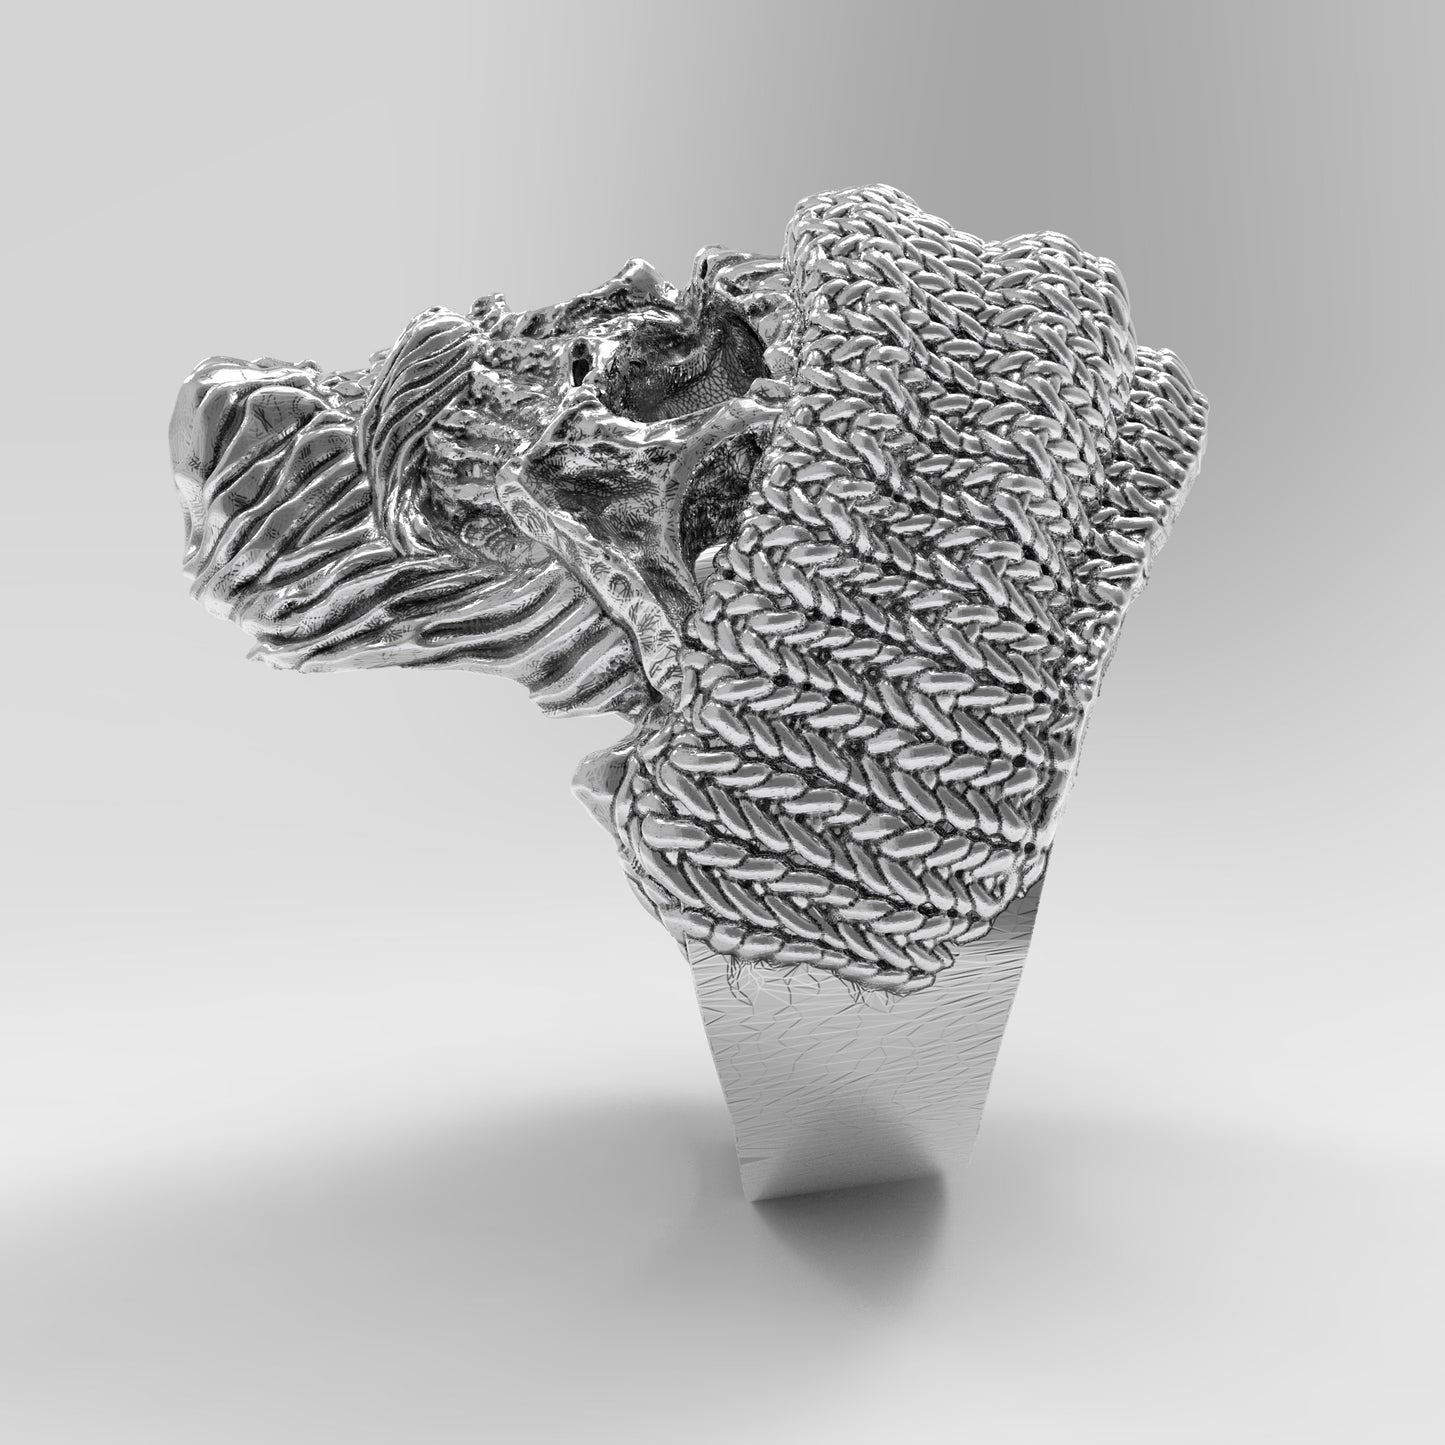 Pánský prsten ve stylu pletené čepice Lebka s vousy a knírem Stříbrný 925